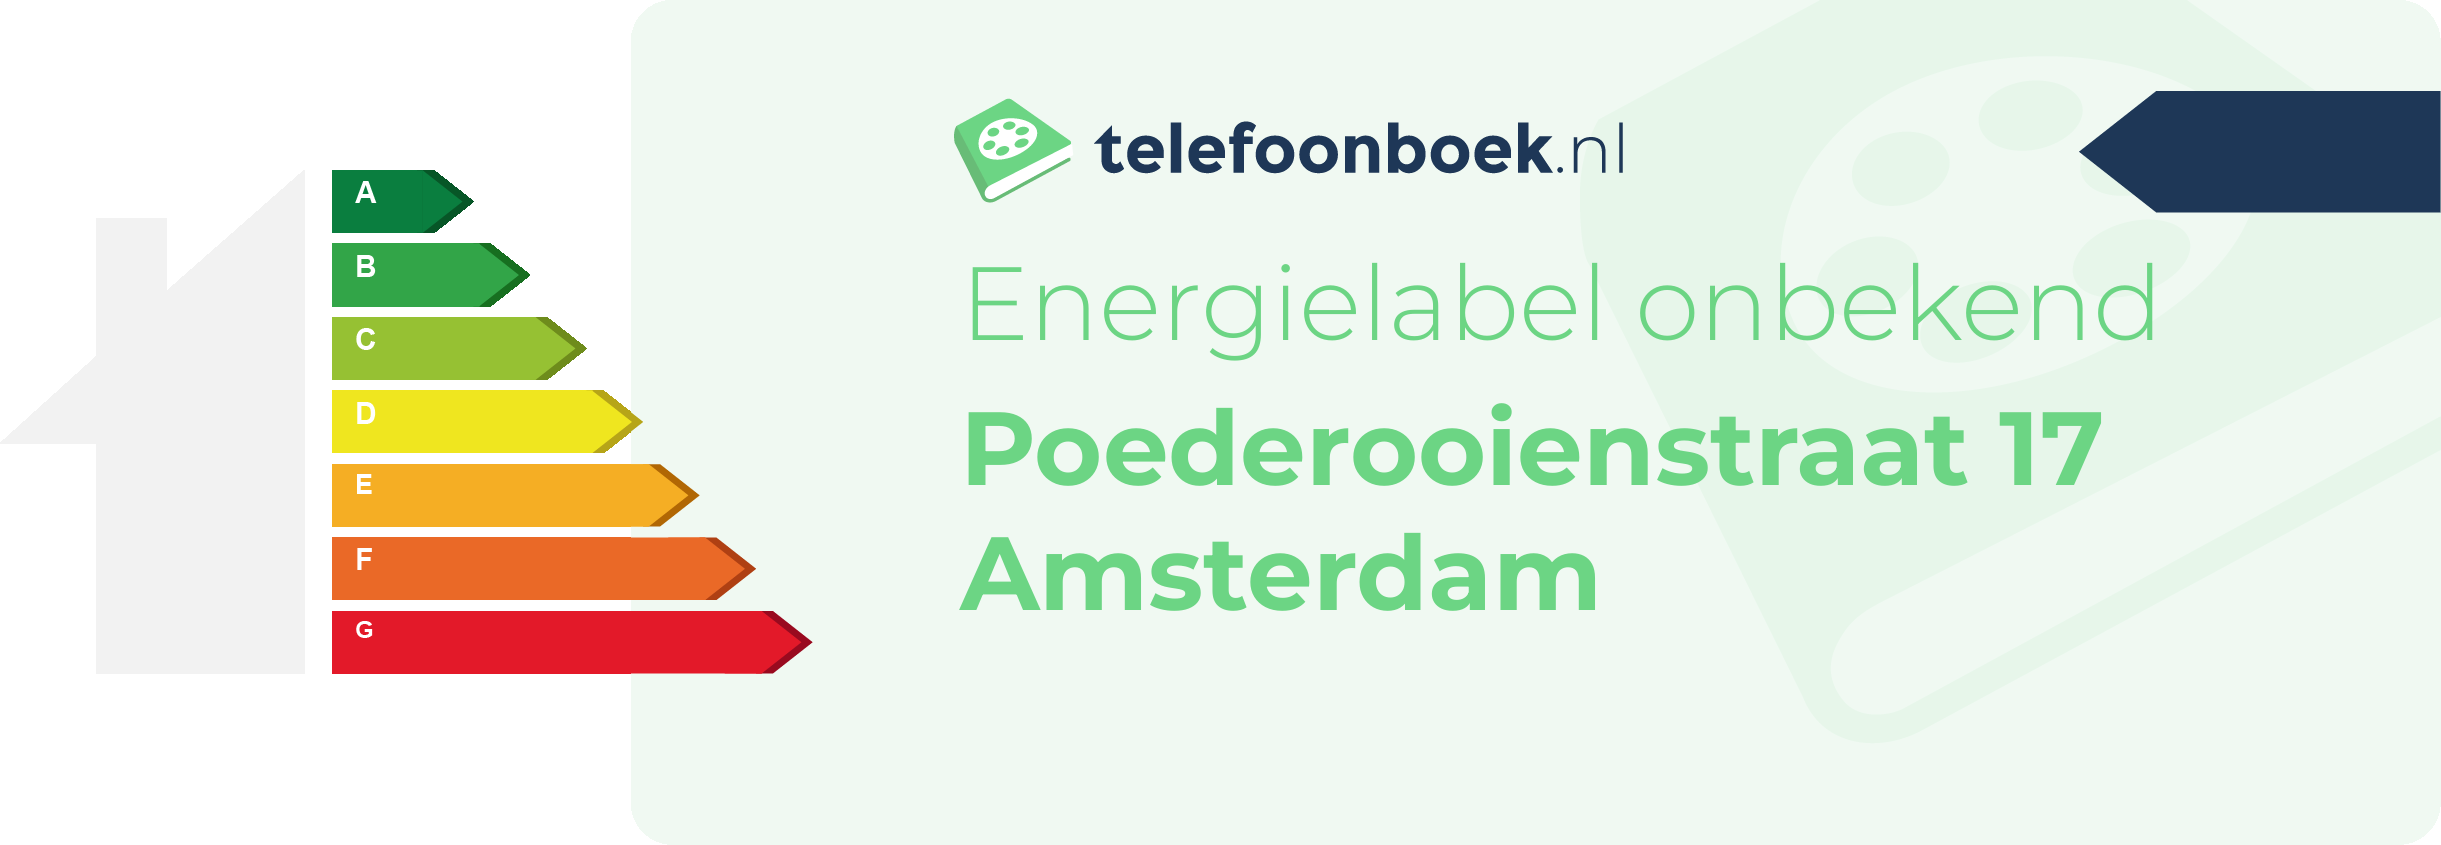 Energielabel Poederooienstraat 17 Amsterdam